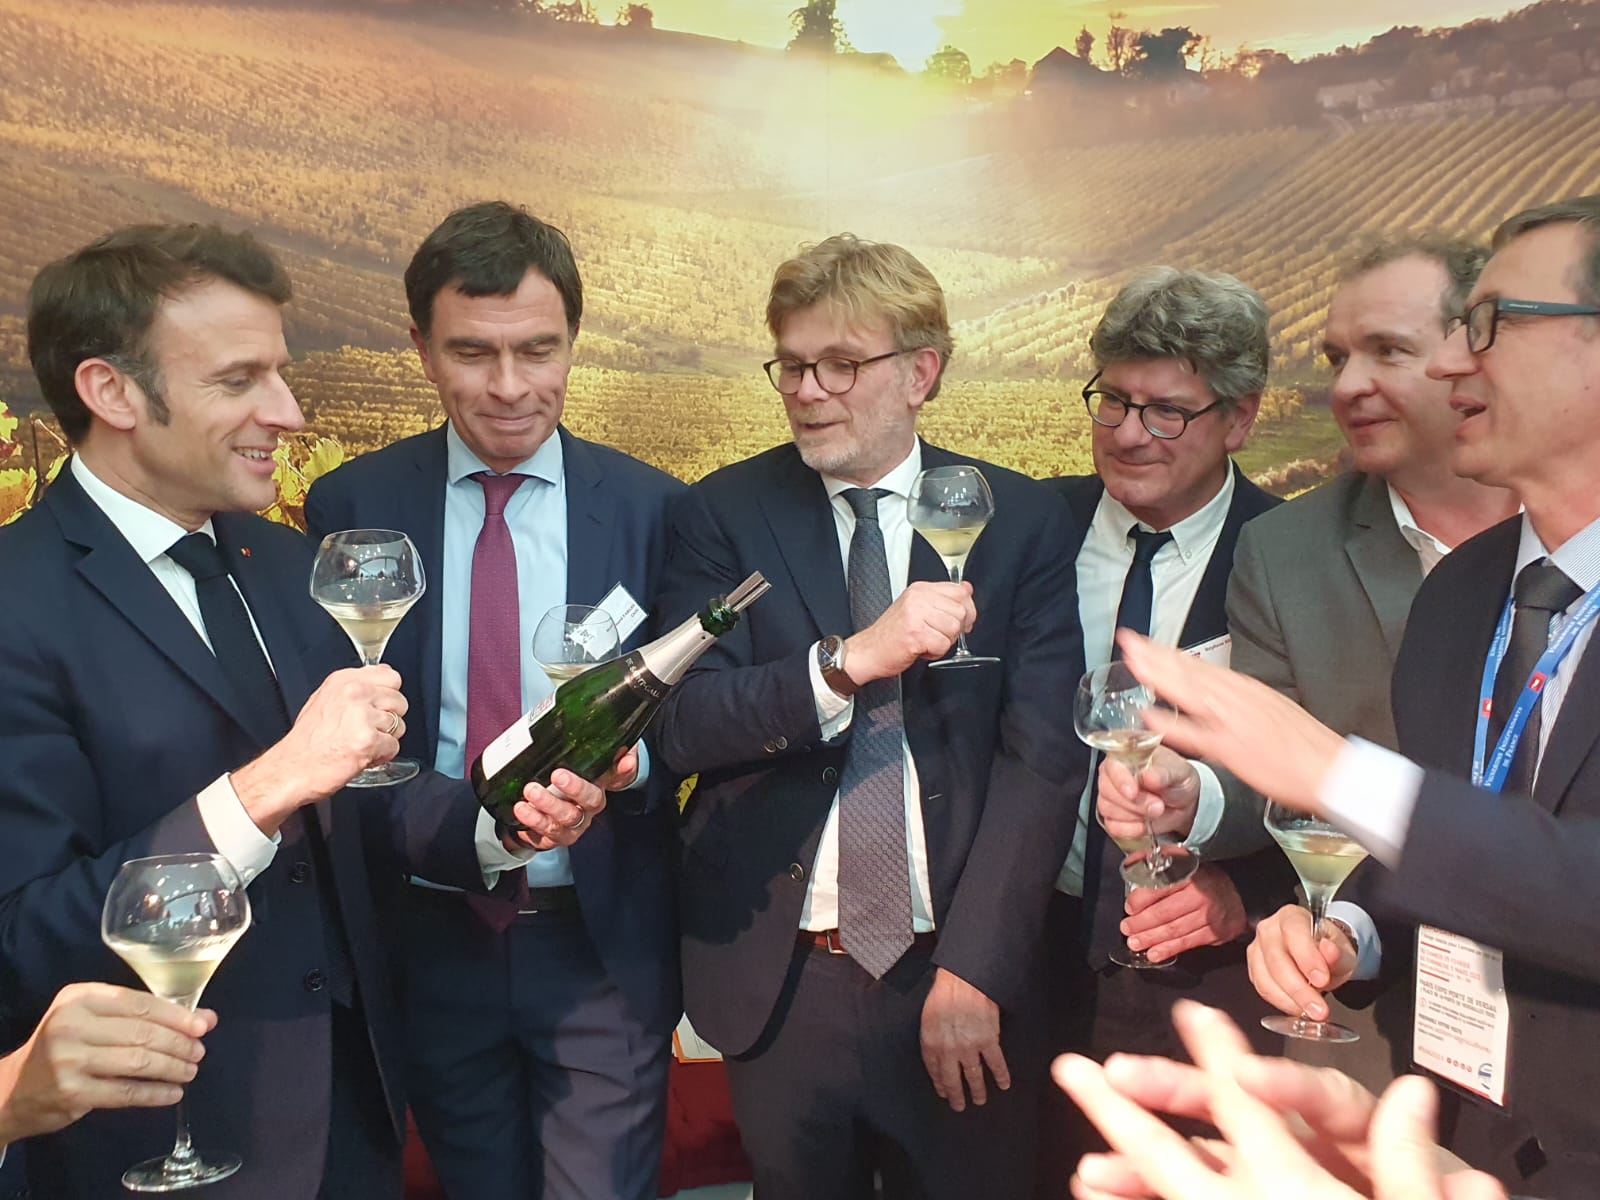 Lire la suite à propos de l’article Emmanuel Macron en soutien à la filière viticole